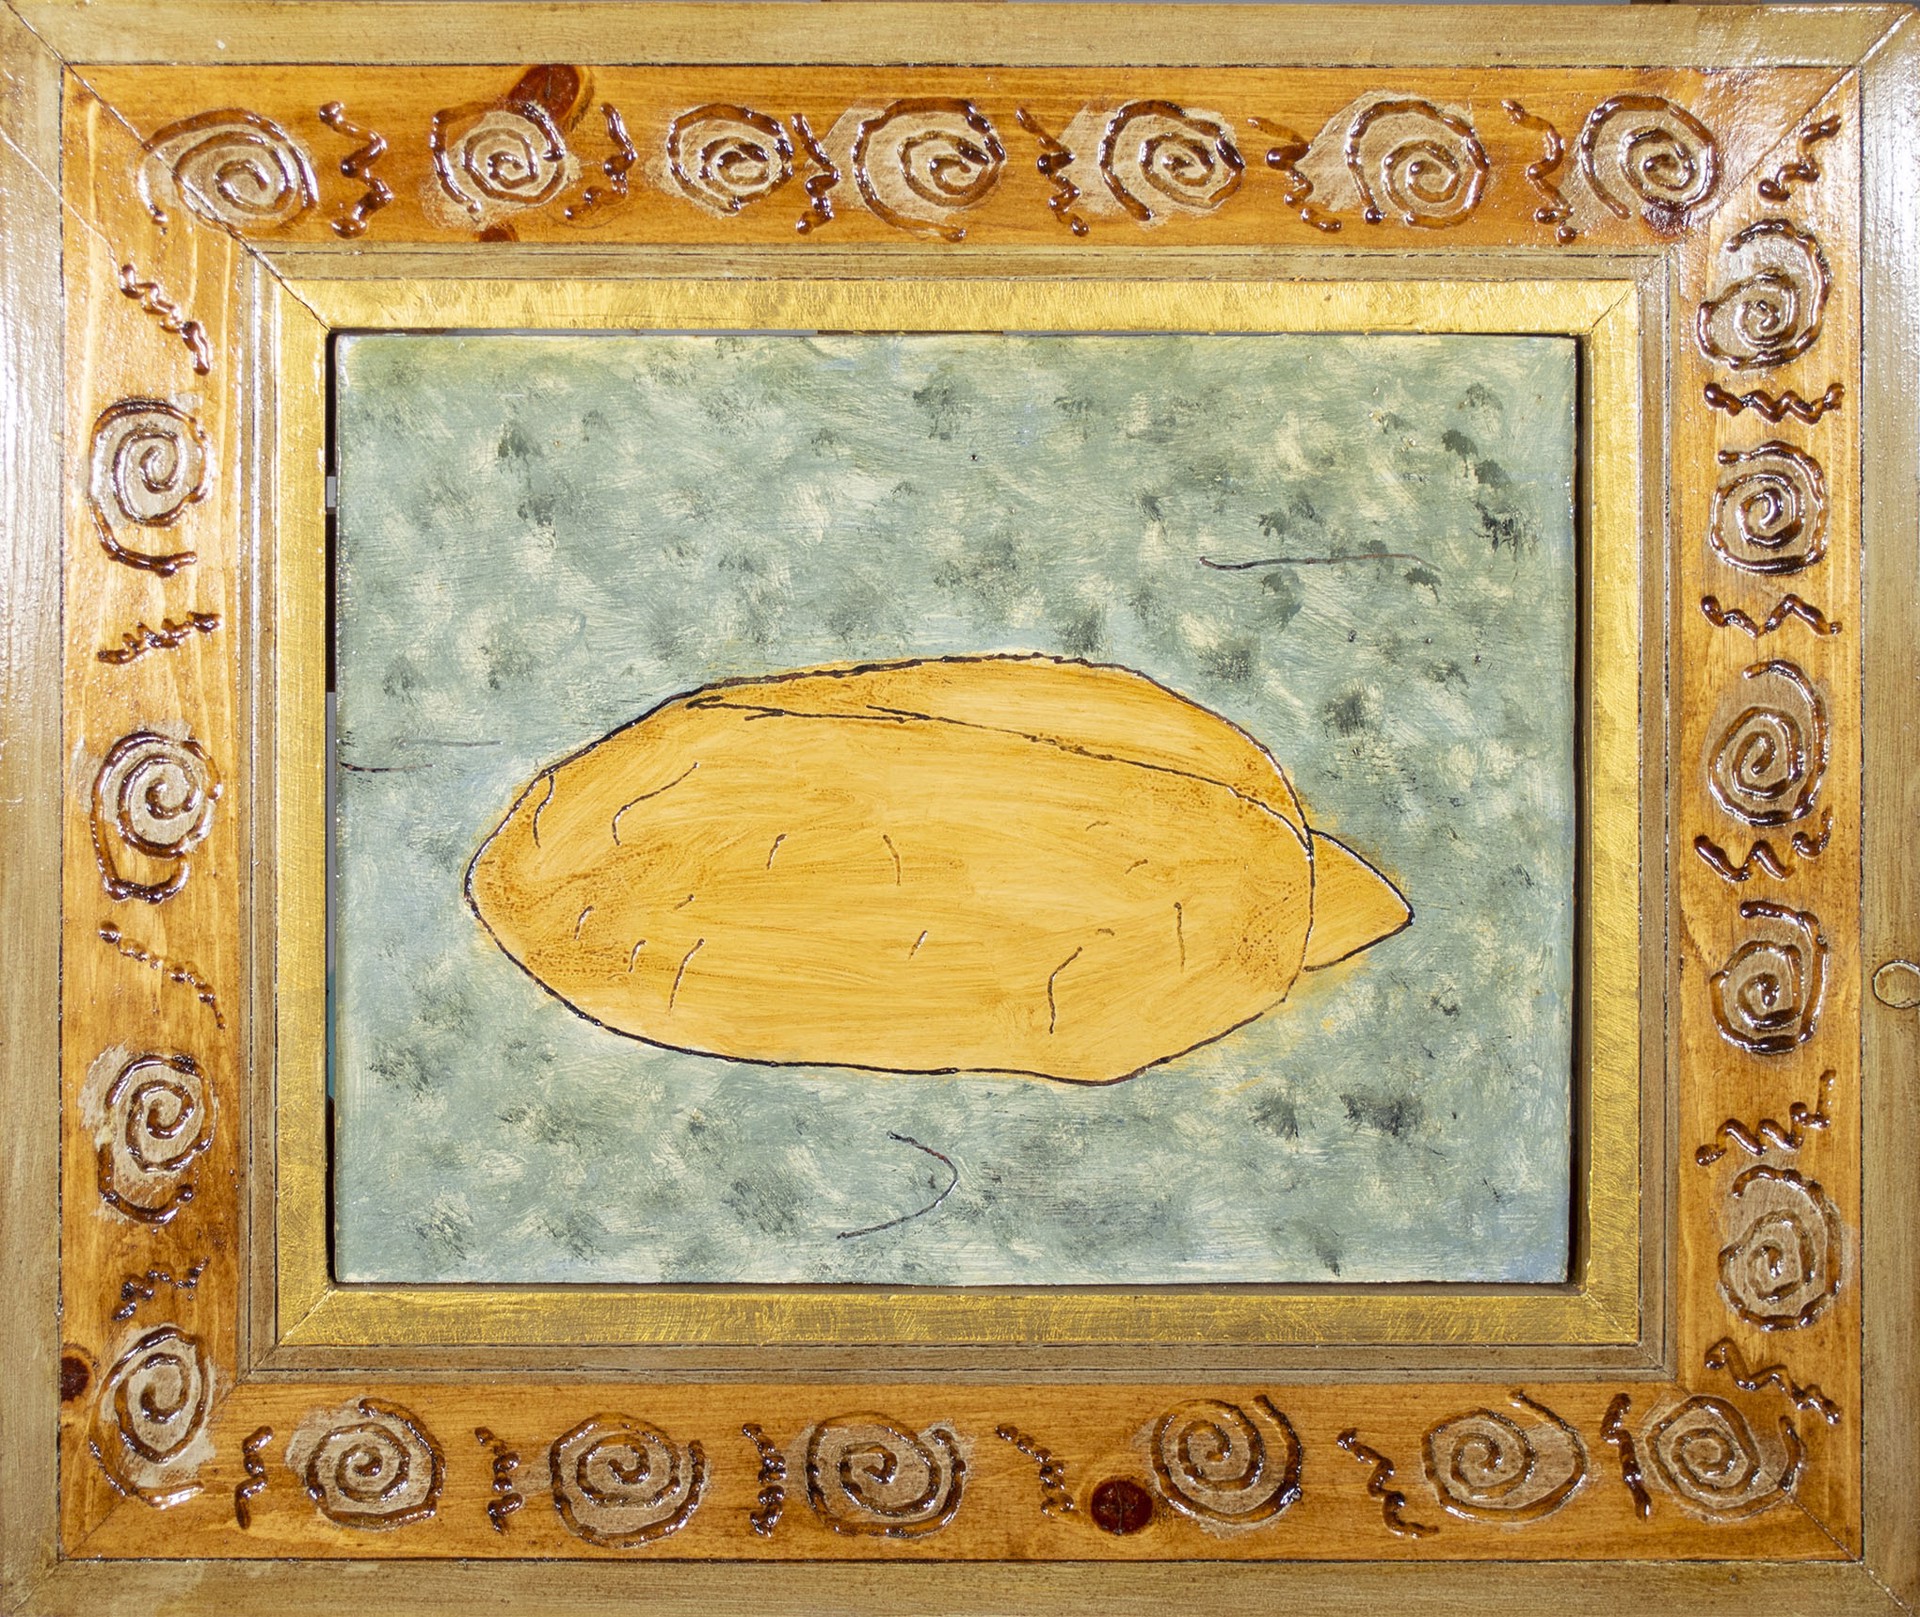 Bread on Carpet by Robert Richter